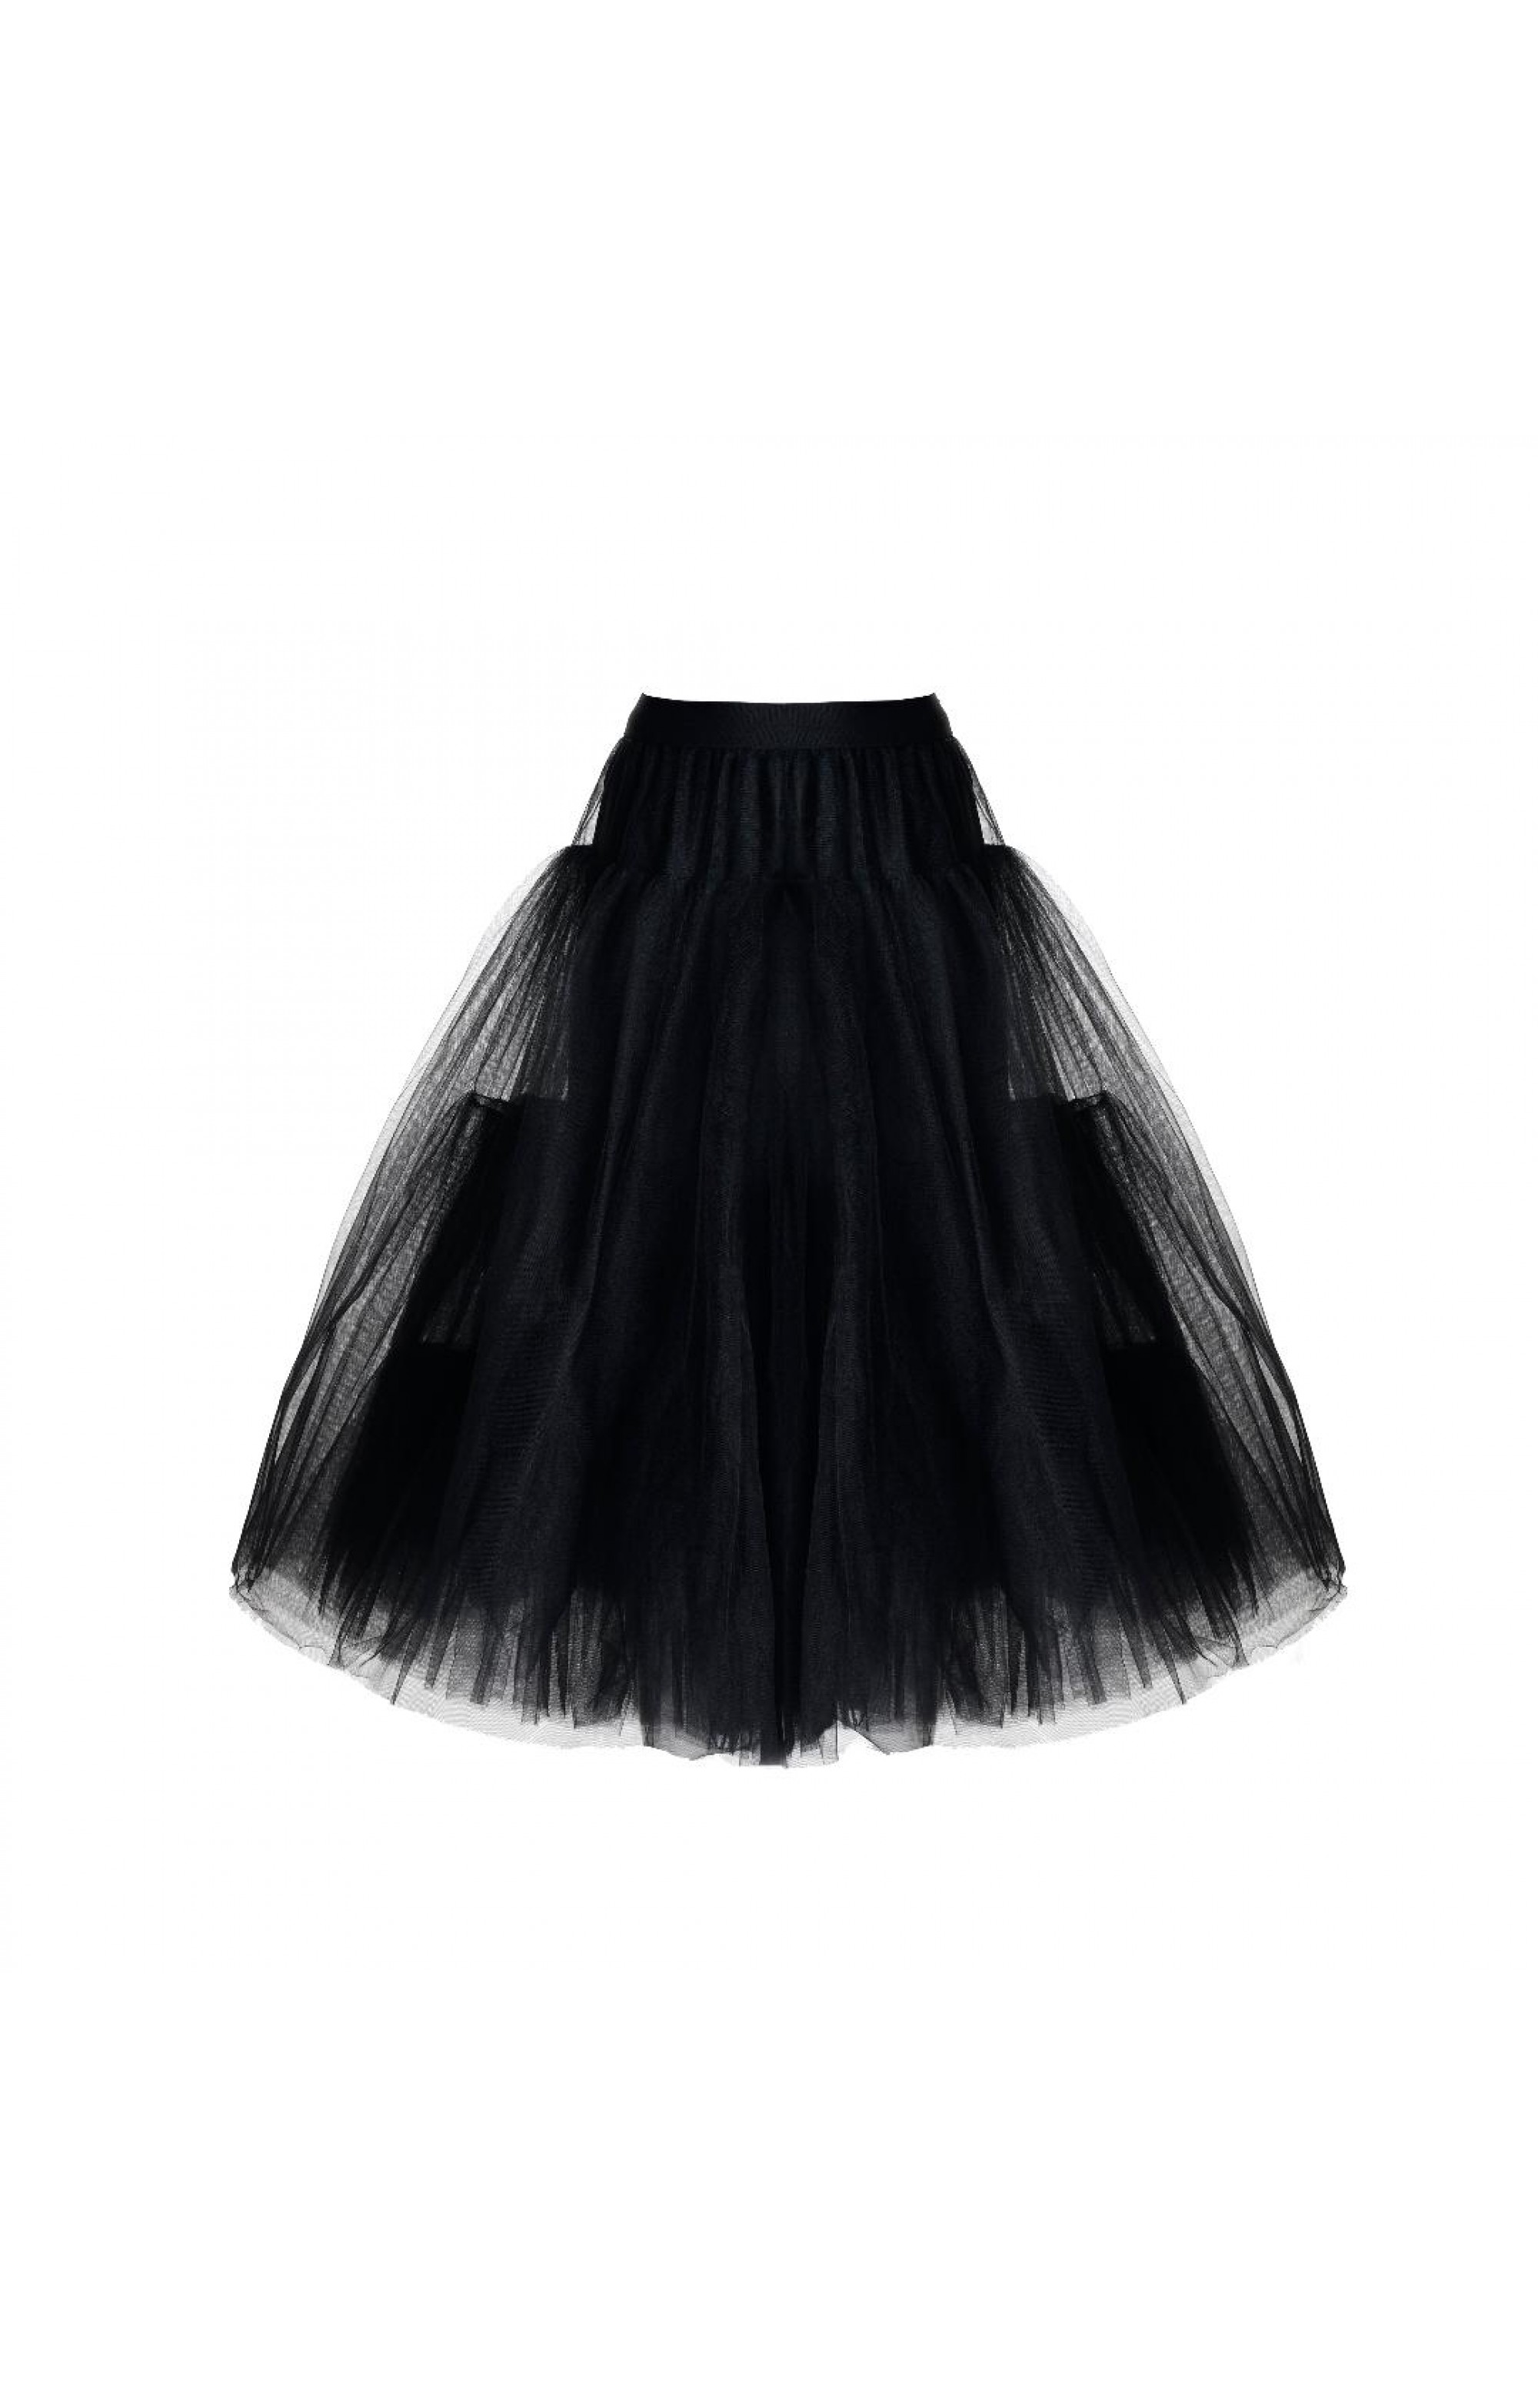 Petticoat 85 cm Black